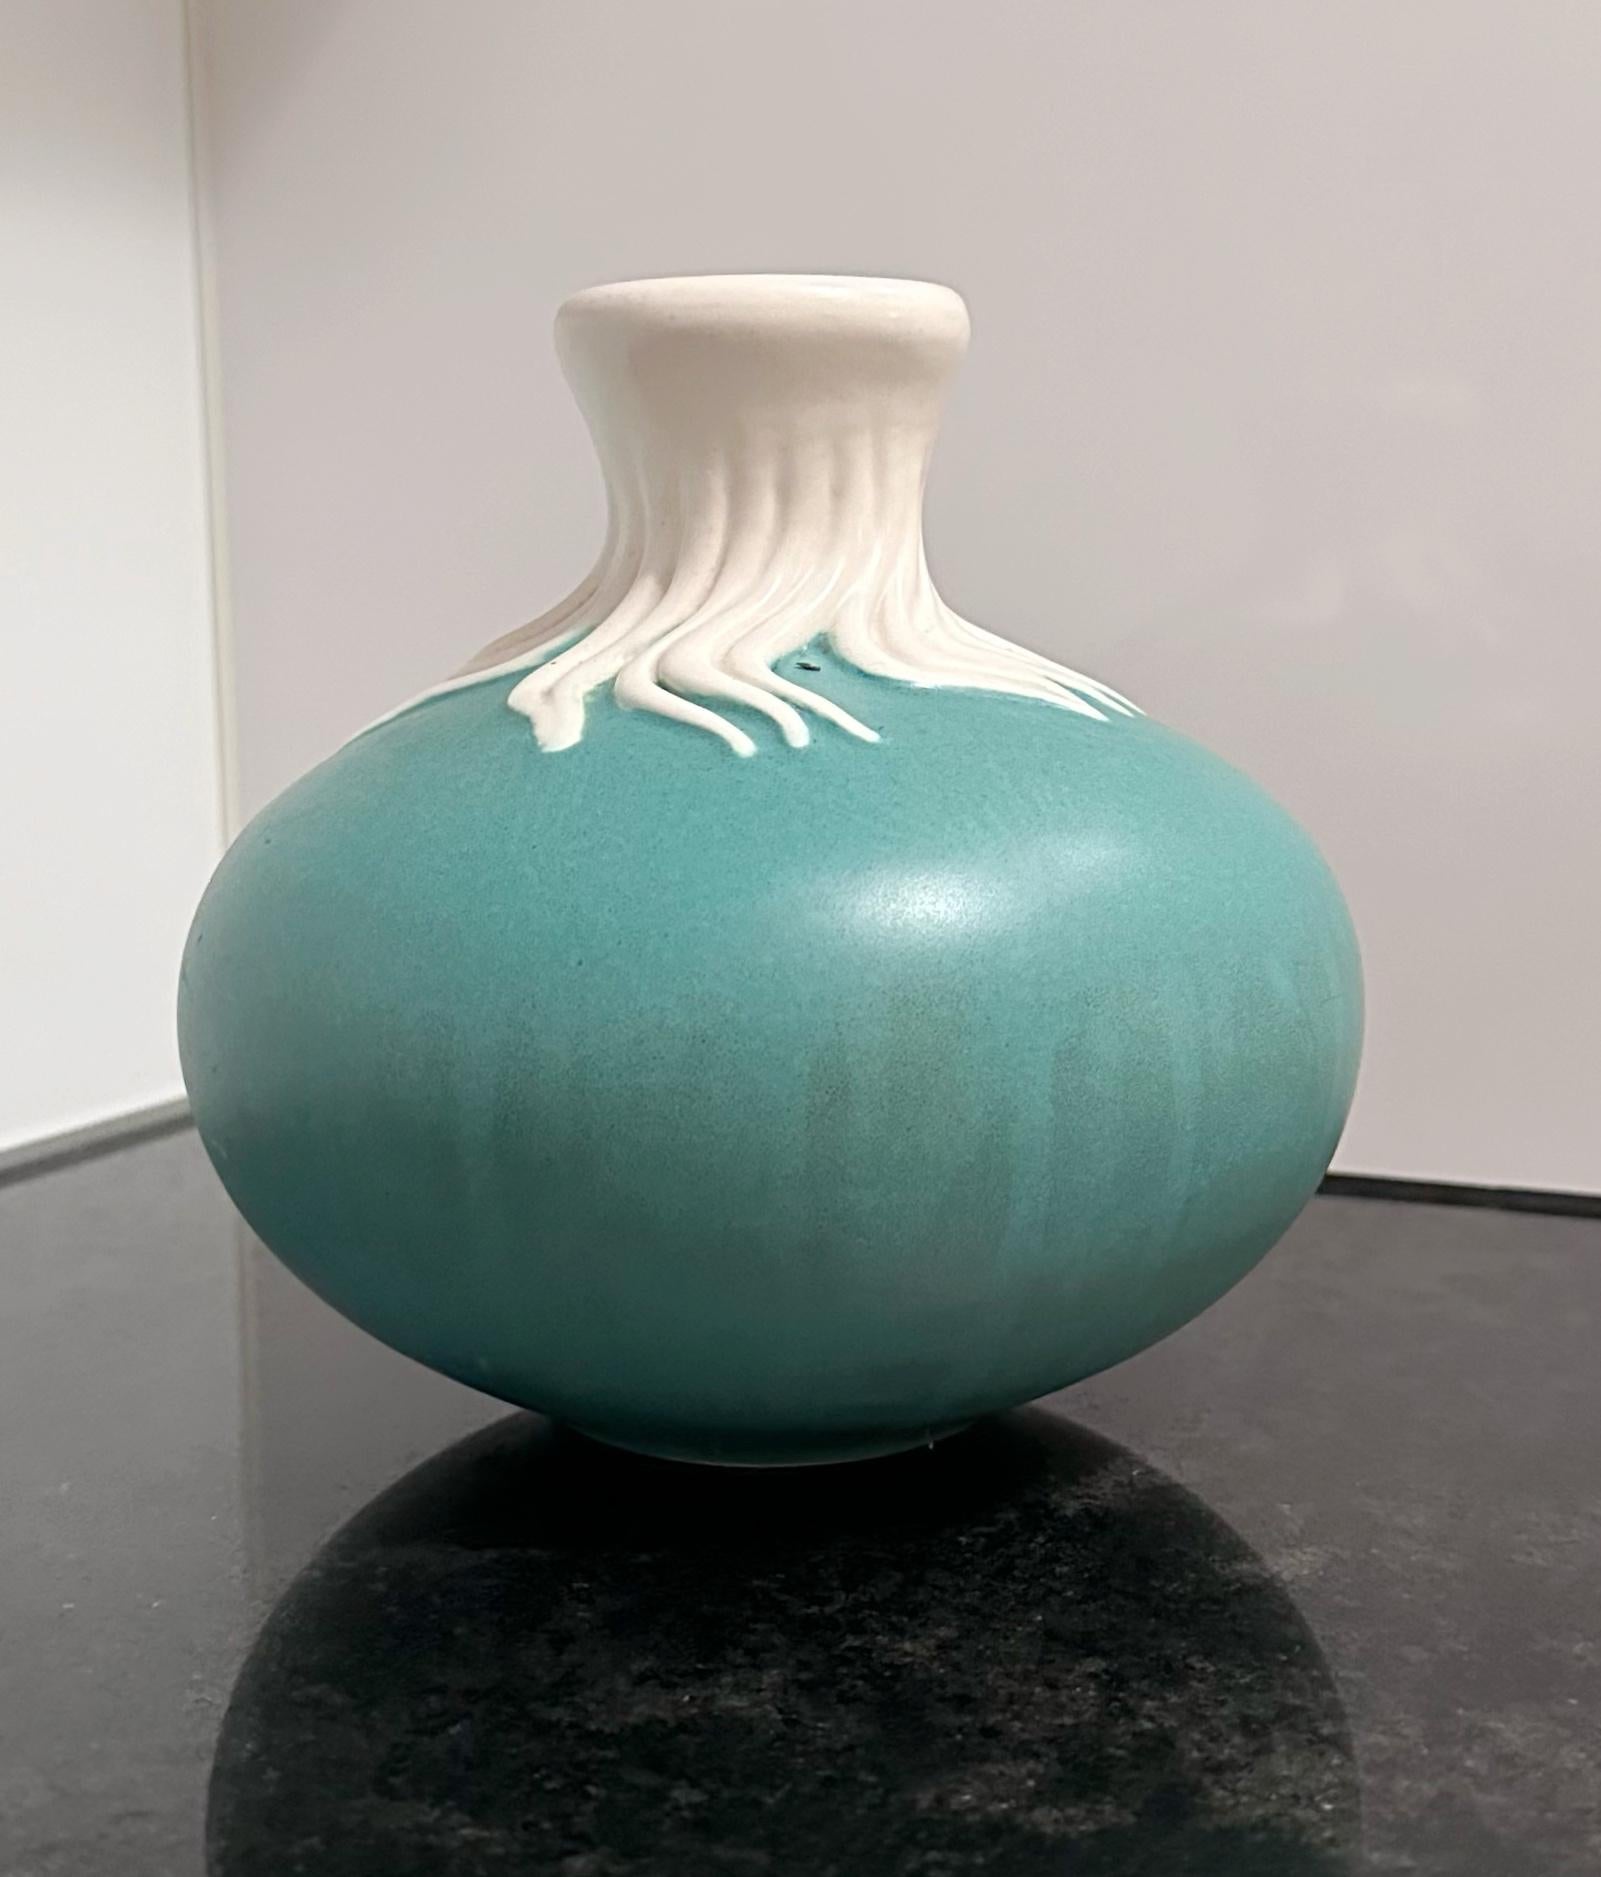 Giovanni Gariboldi
Blue and white vase model 